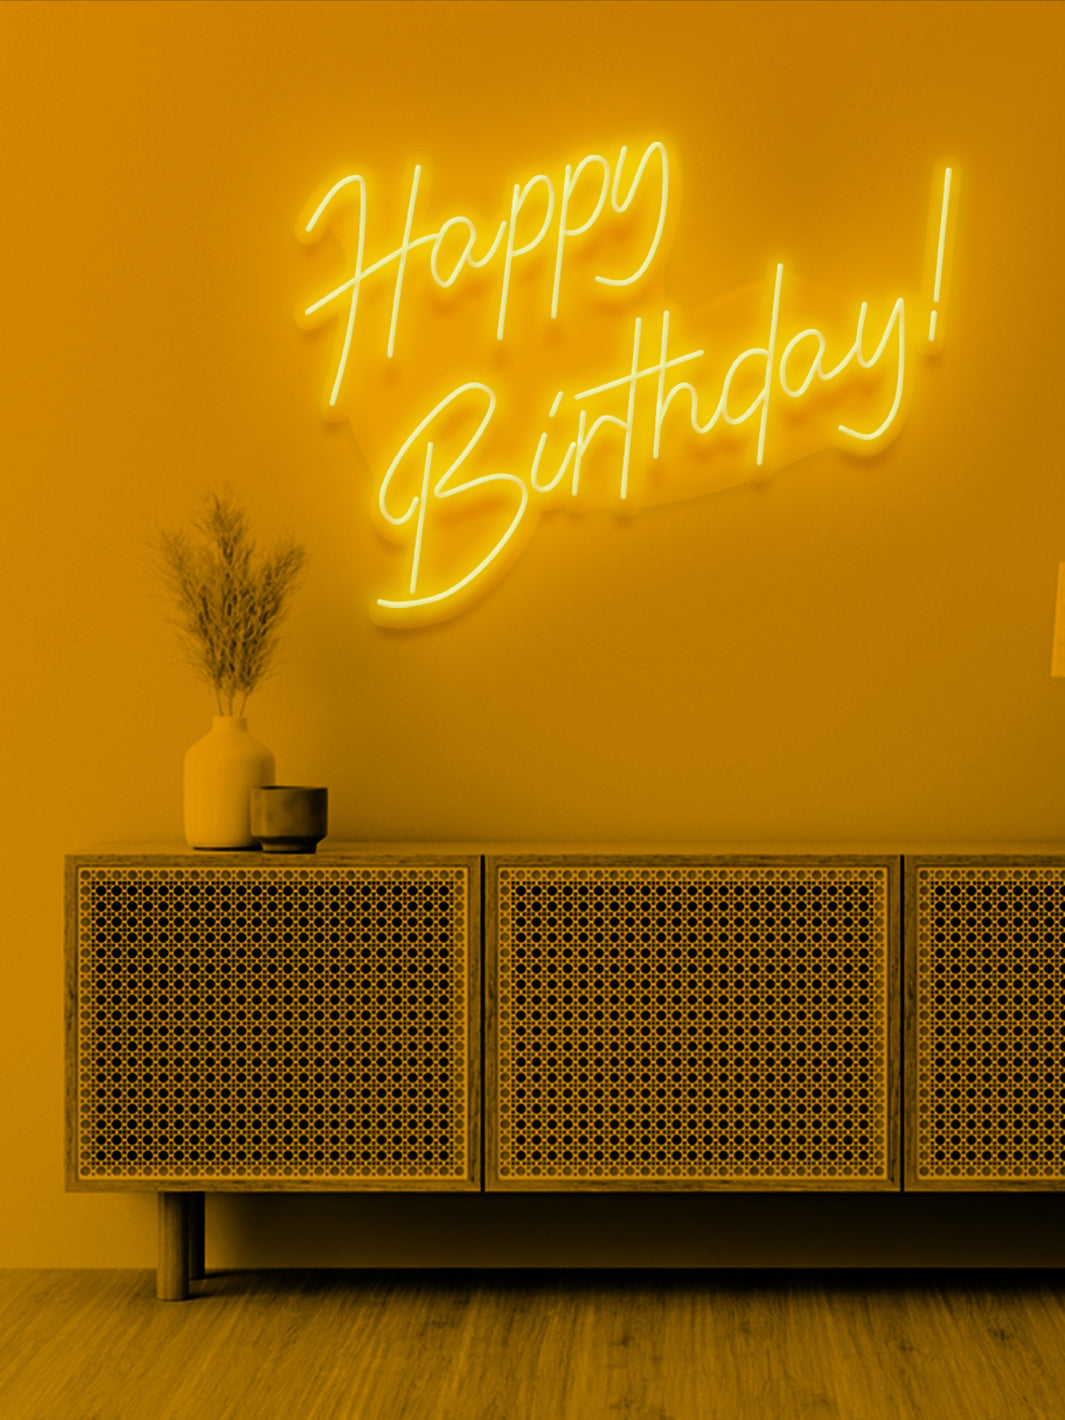 Happy birthday - LED Neon skilt